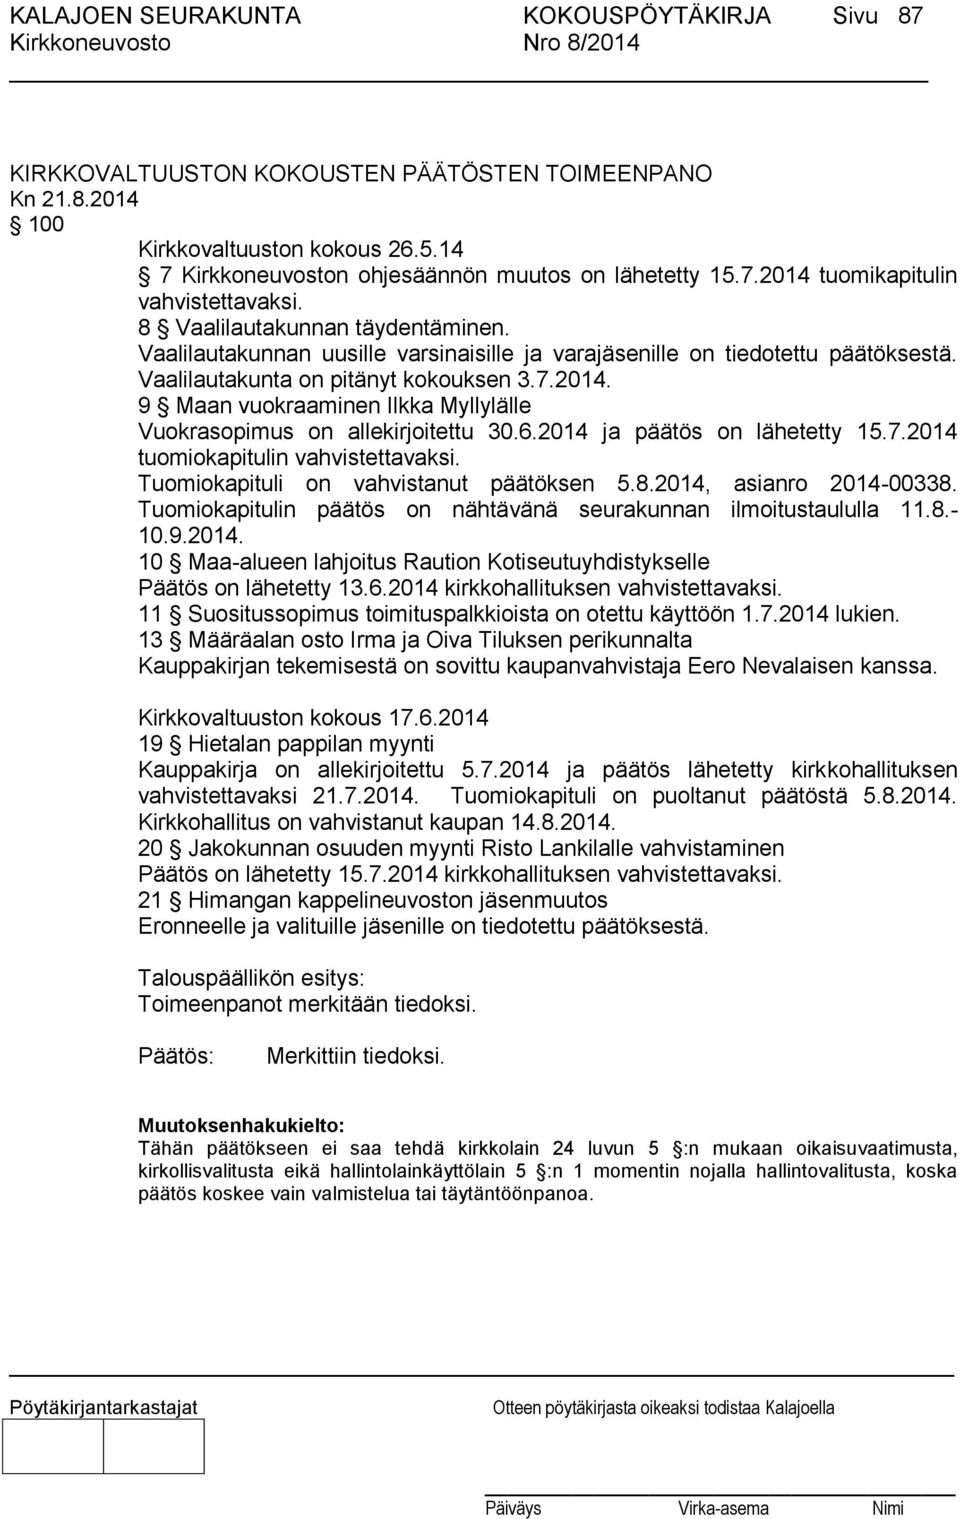 9 Maan vuokraaminen Ilkka Myllylälle Vuokrasopimus on allekirjoitettu 30.6.2014 ja päätös on lähetetty 15.7.2014 tuomiokapitulin vahvistettavaksi. Tuomiokapituli on vahvistanut päätöksen 5.8.